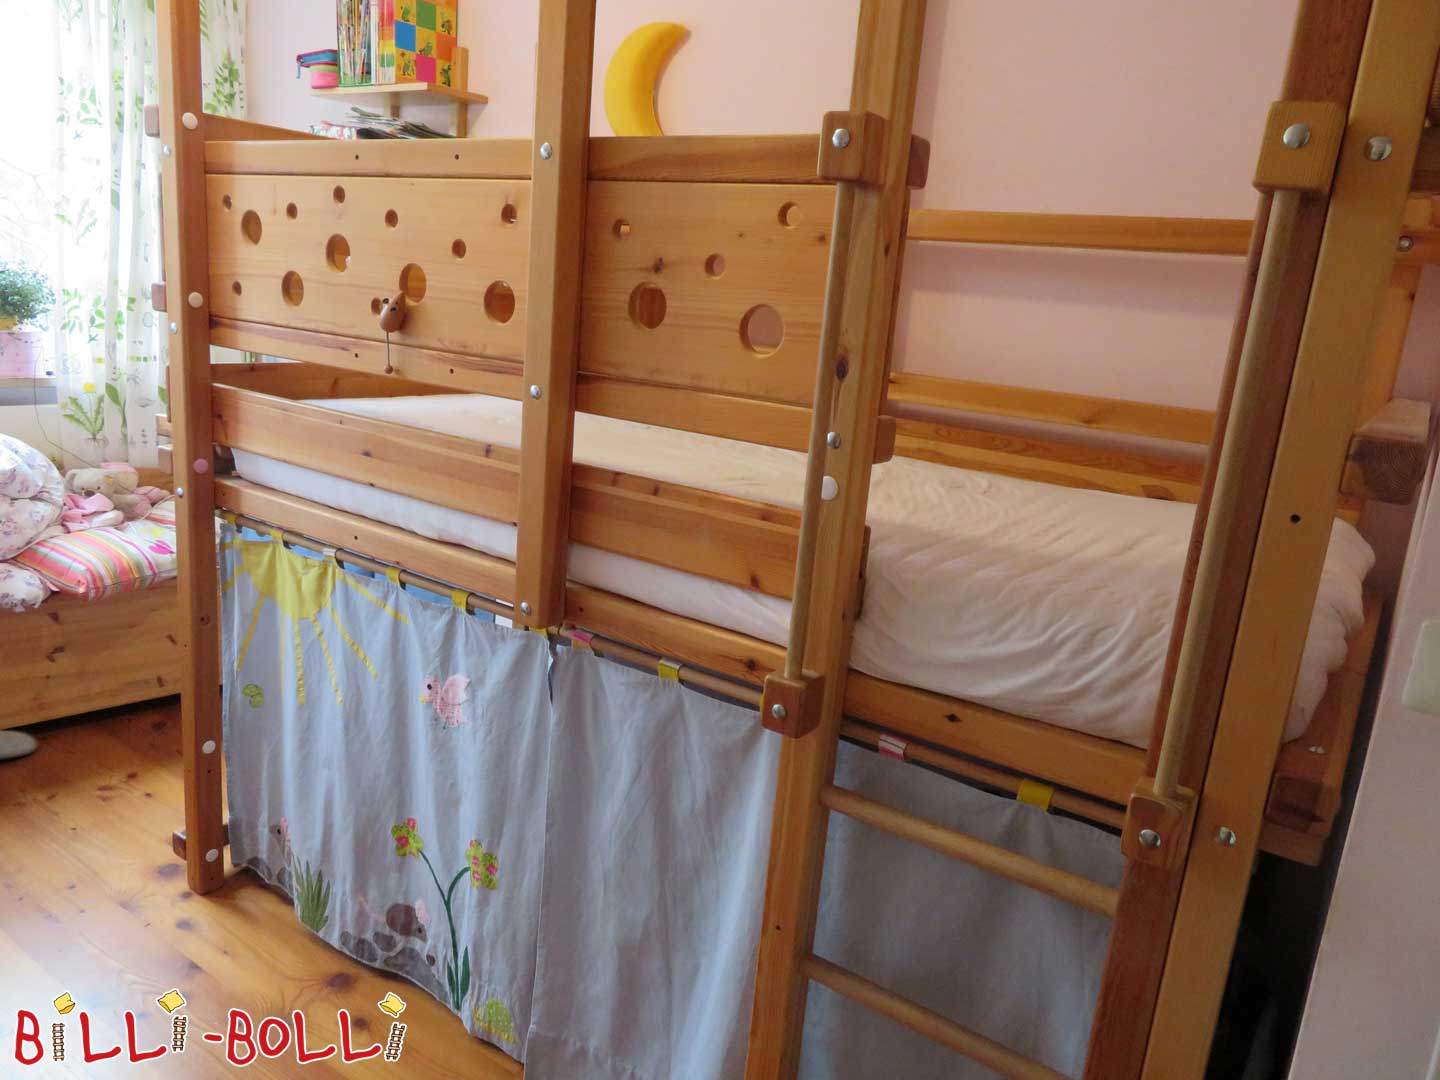 माउस मचान बिस्तर जो बच्चे के साथ बढ़ता है (कोटि: मचान बिस्तर का इस्तेमाल किया)